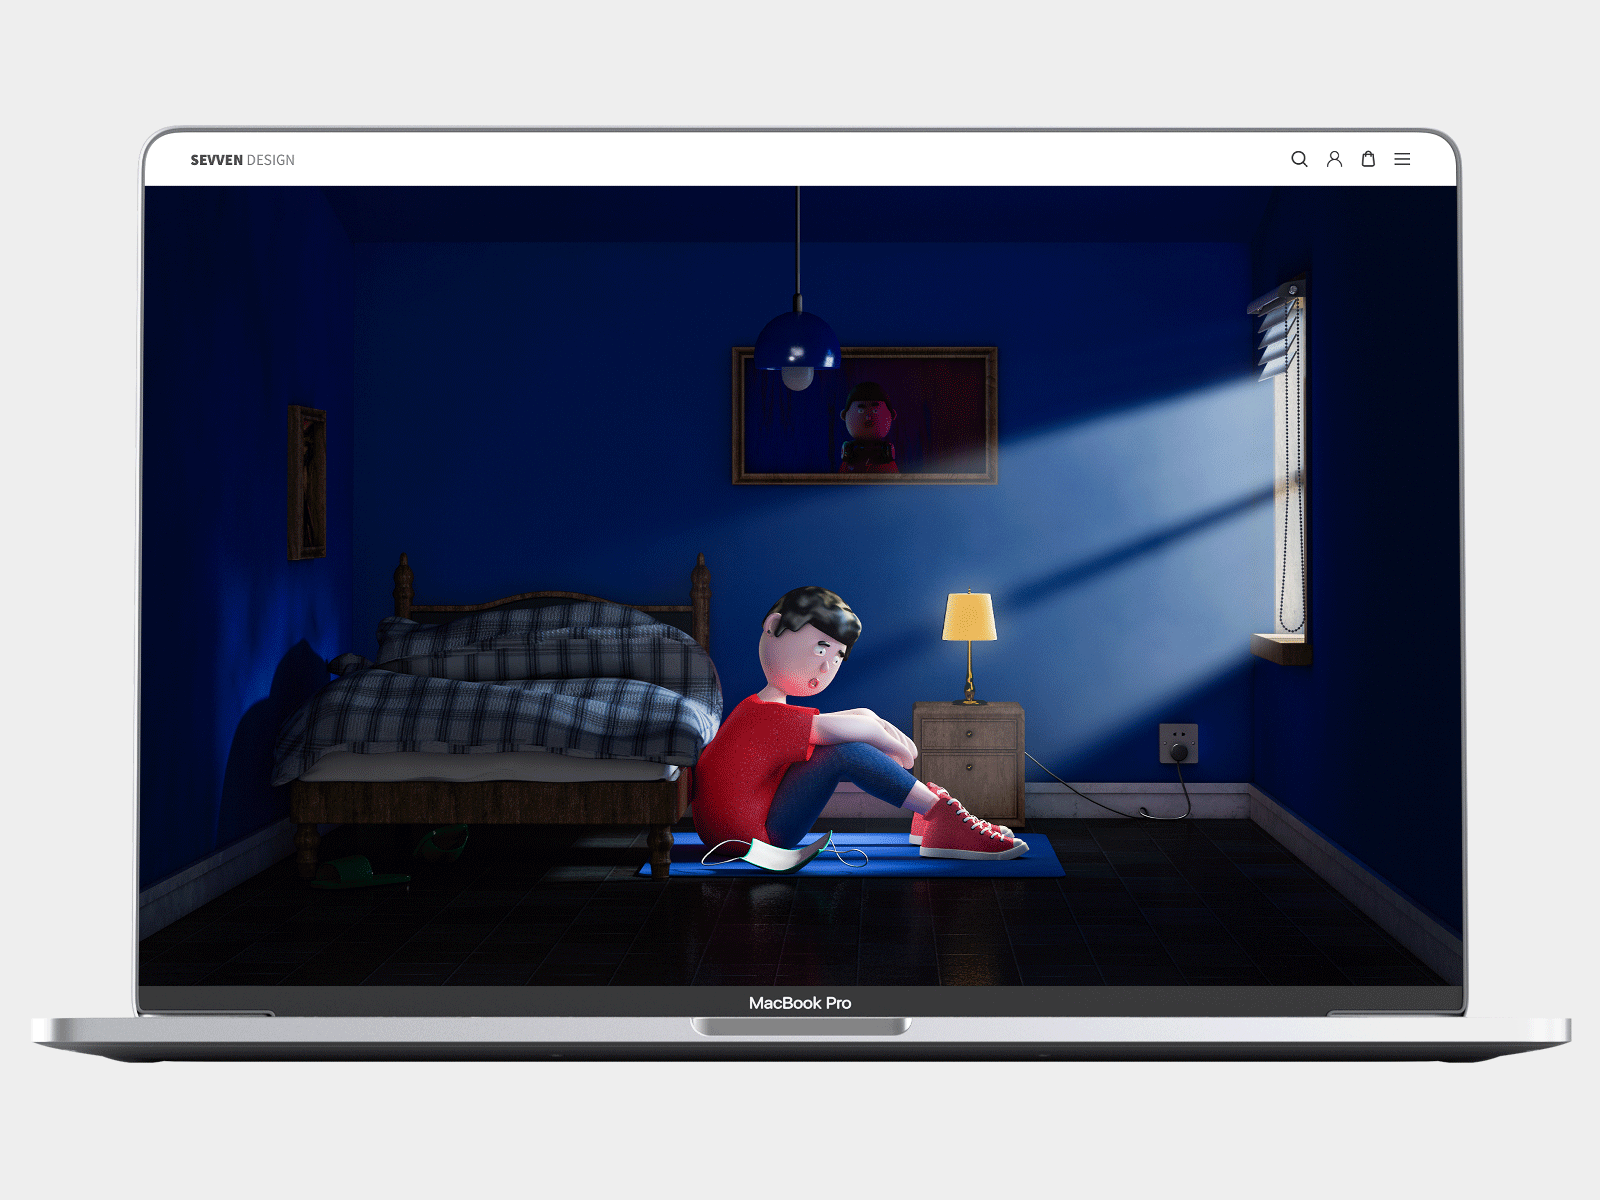 孤独的自由 3d animation art bedroom blue house c4d character design coronavirus disease freedom house illustration illustration logo lonely melancholy red texture typography vector